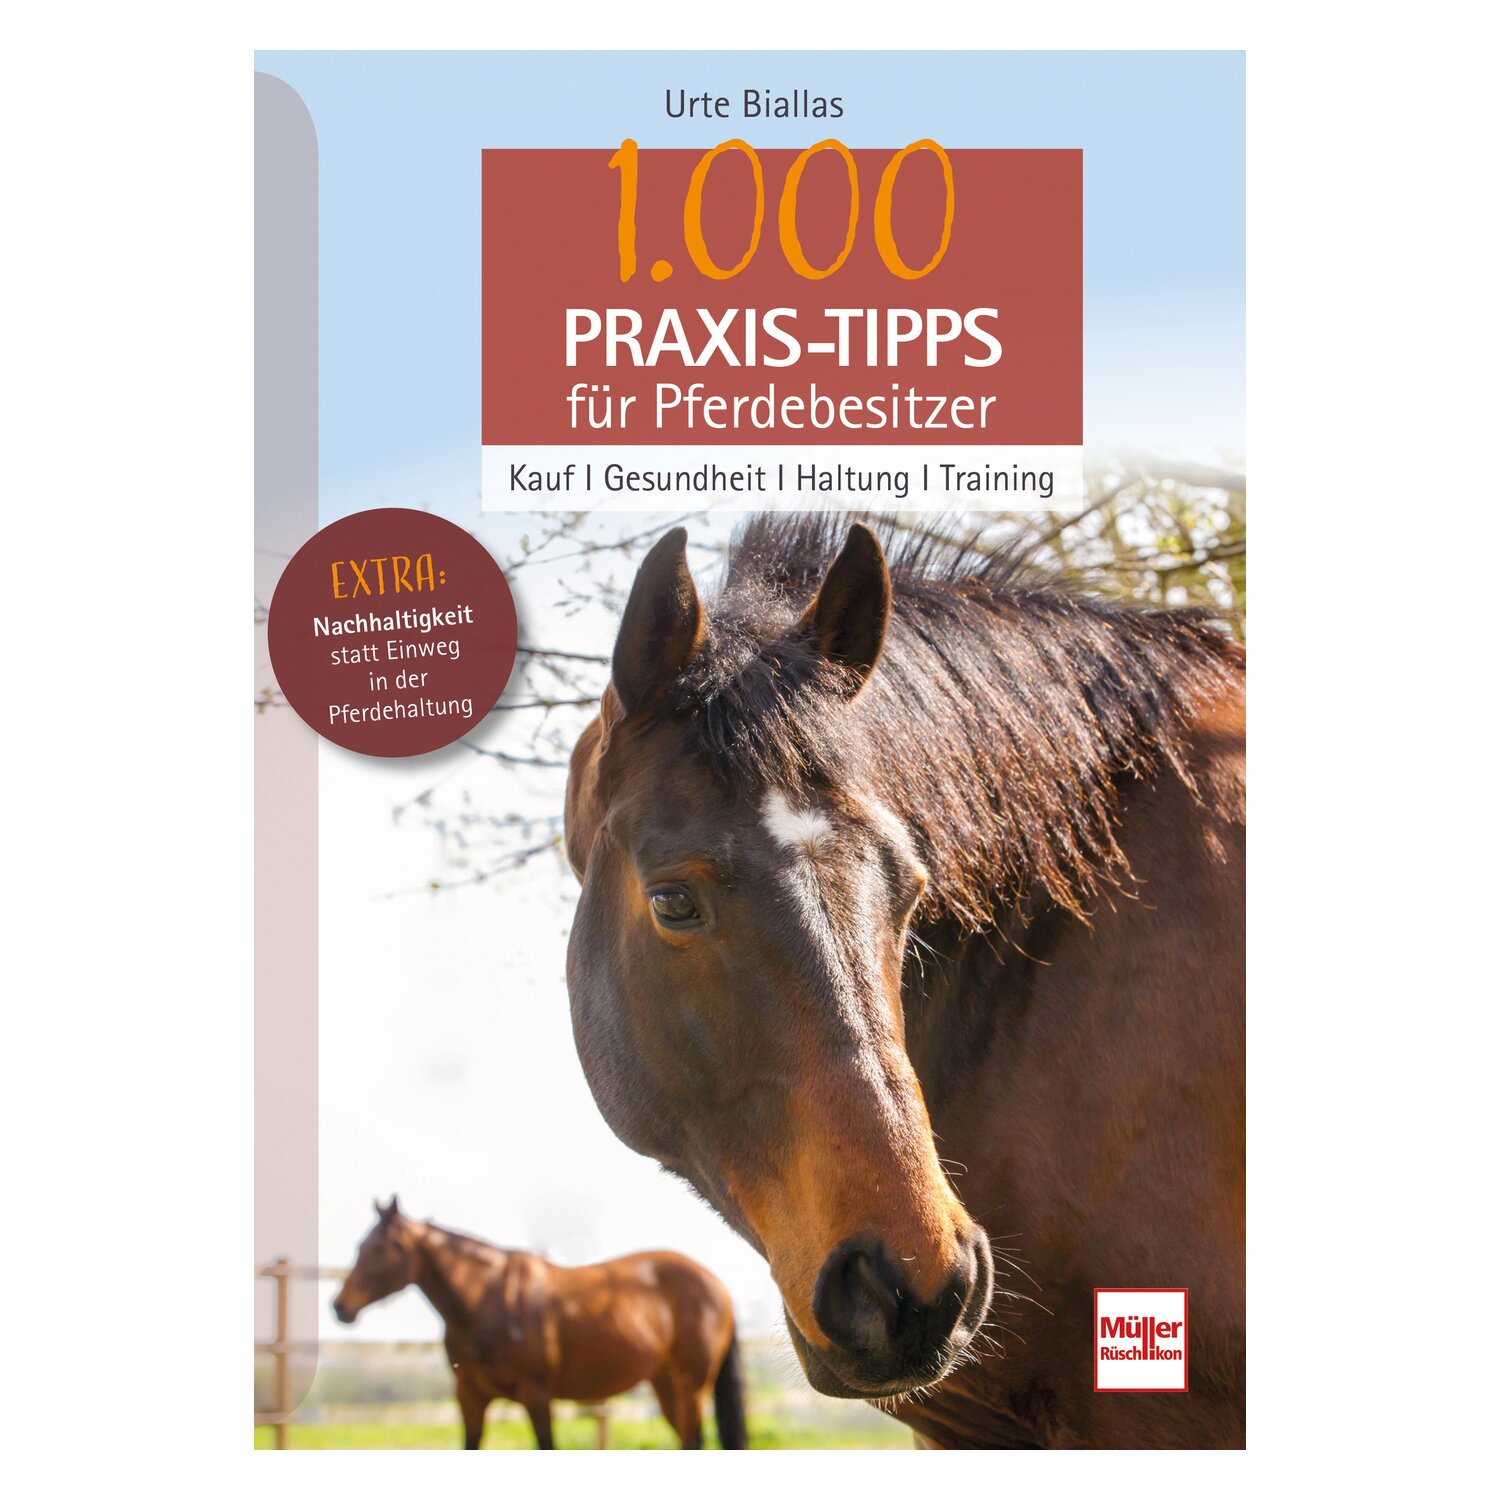 1.000 Praxis-Tipps für Pferdebesitzer - Kauf, Gesundheit, Haltung, Training 